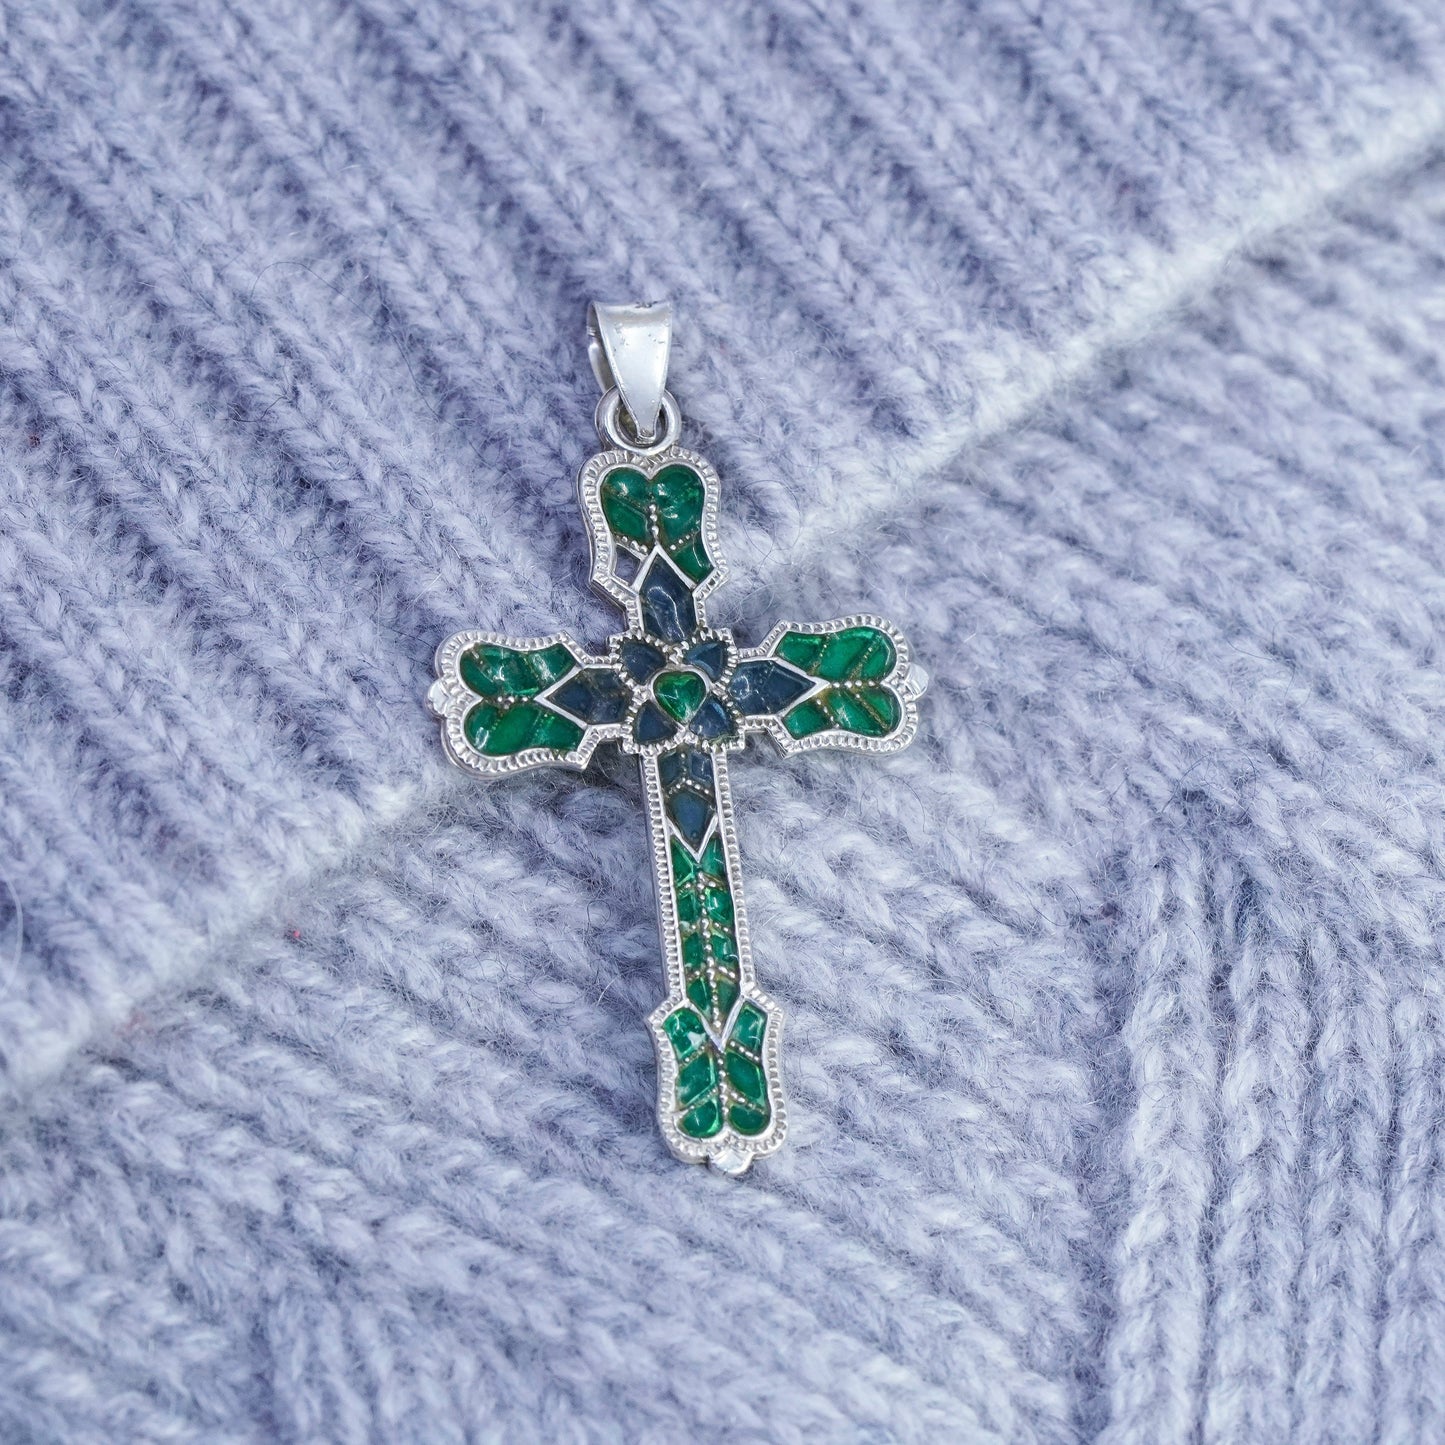 antique sterling 925 silver enamel cross pendant with green enamel